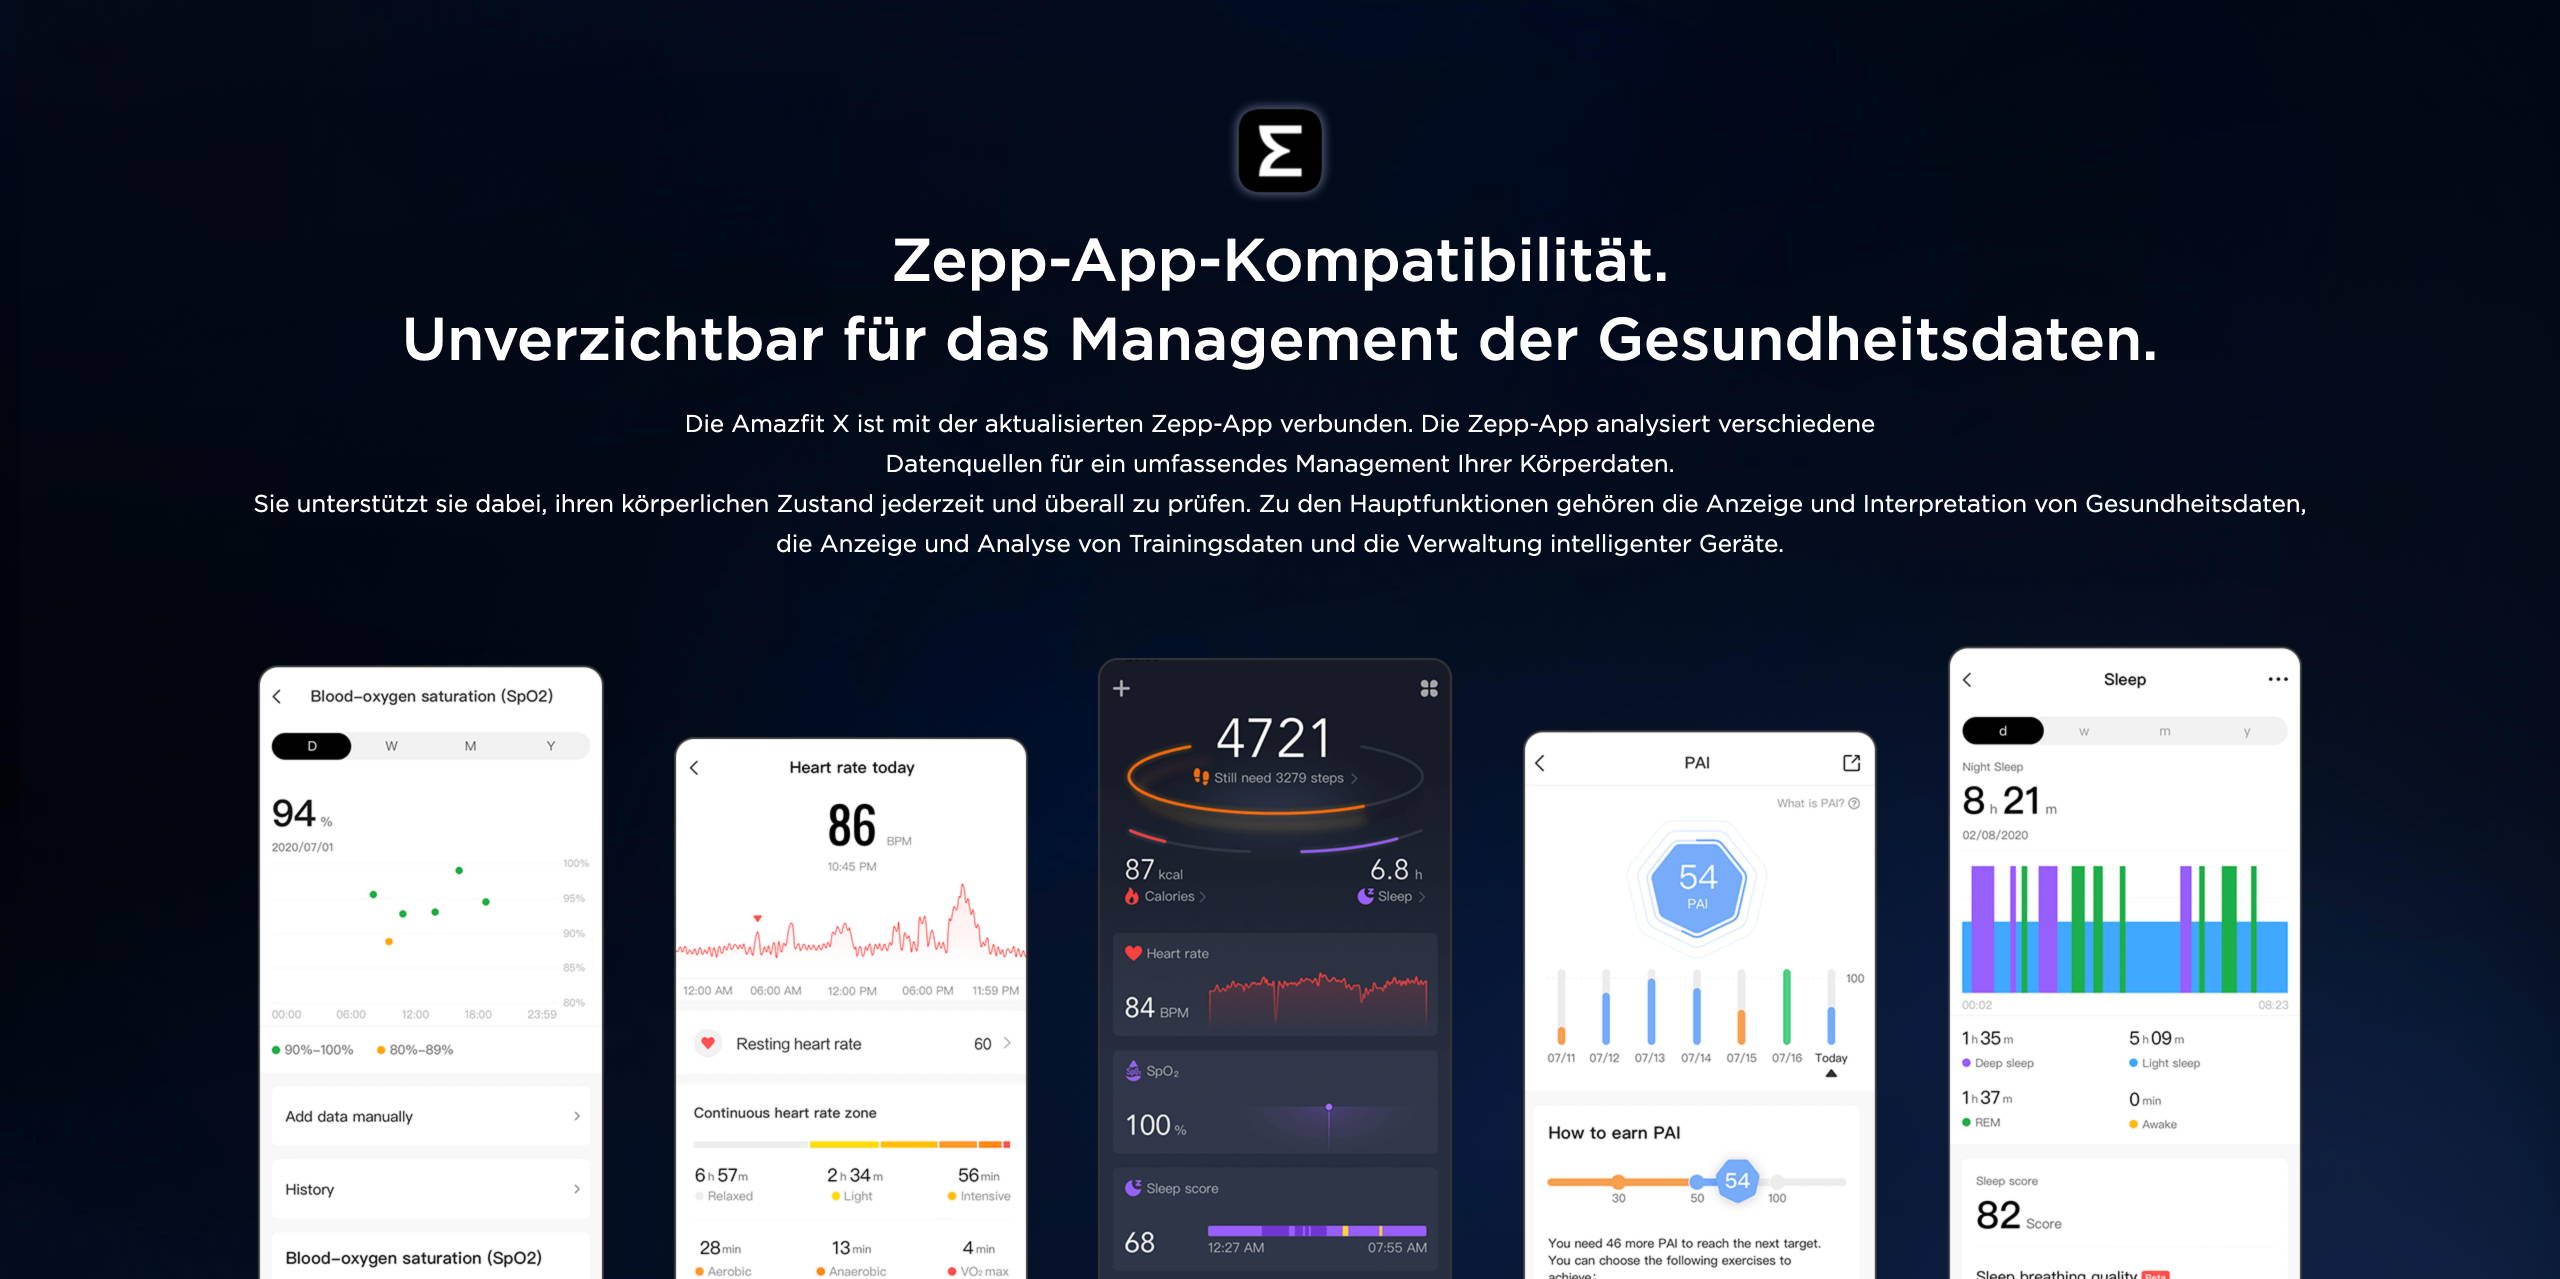 Amazfit X - Zepp-App-Kompatibilität. Unverzichtbar für das Management der Gesundheitsdaten.